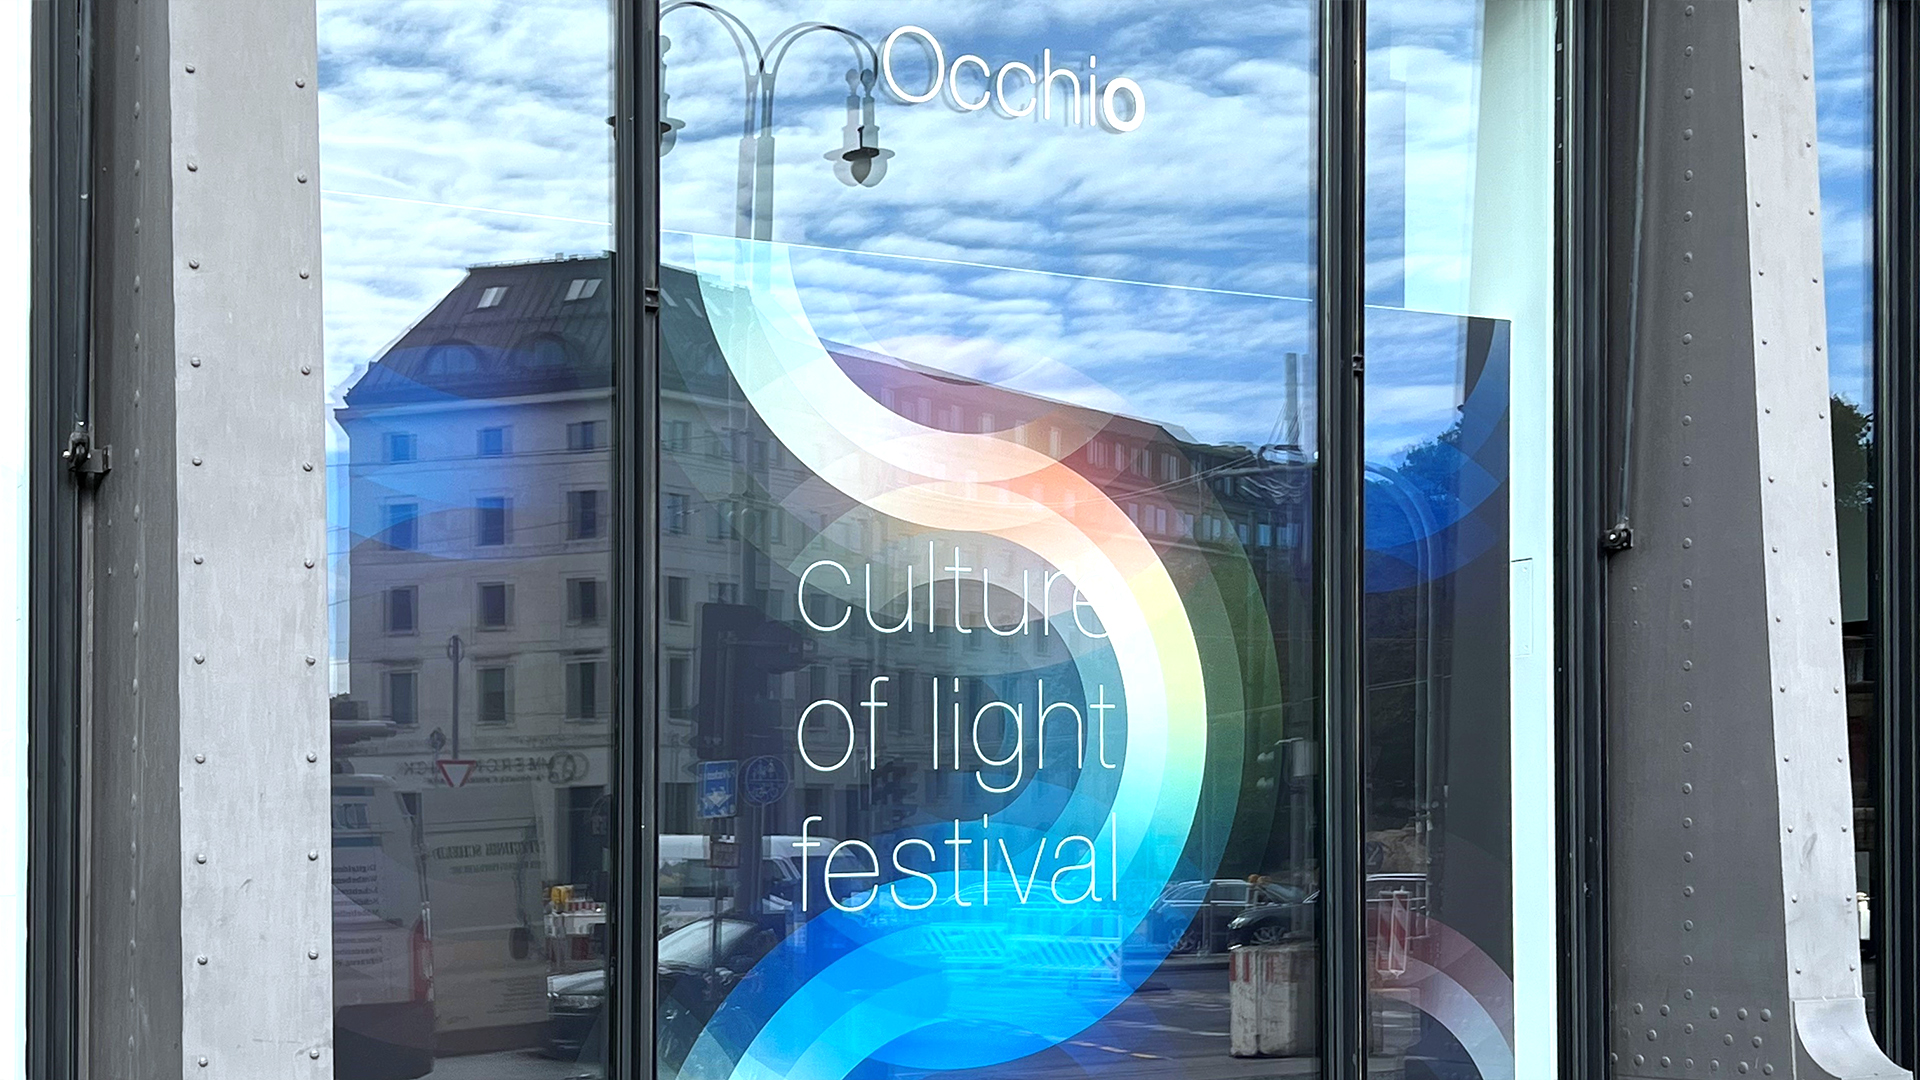 Occhio culture of light Festival 02